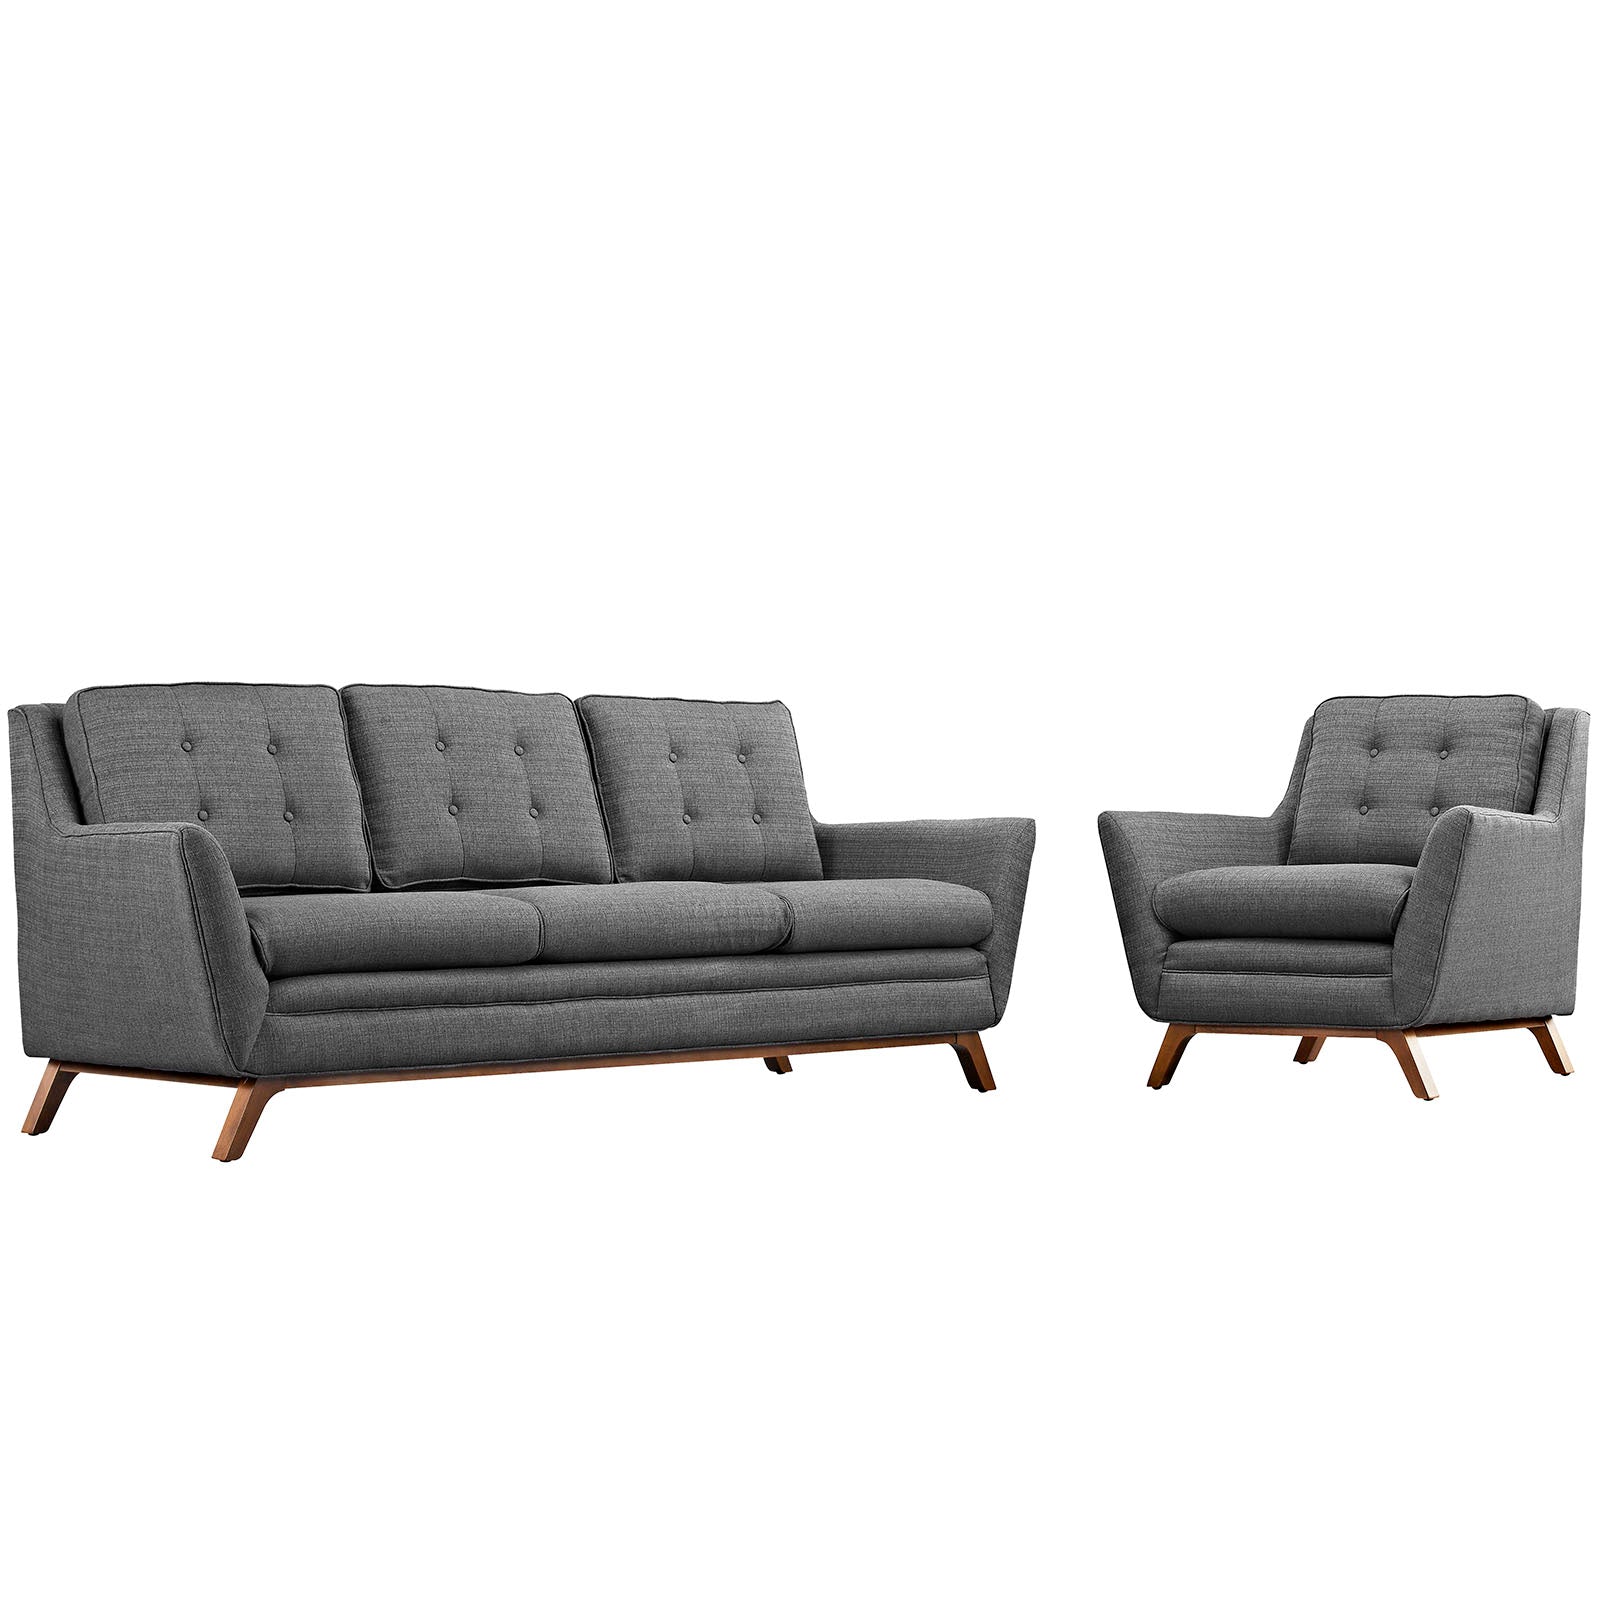 Modway Living Room Sets - Beguile Living Room Set Set Of 2 Gray